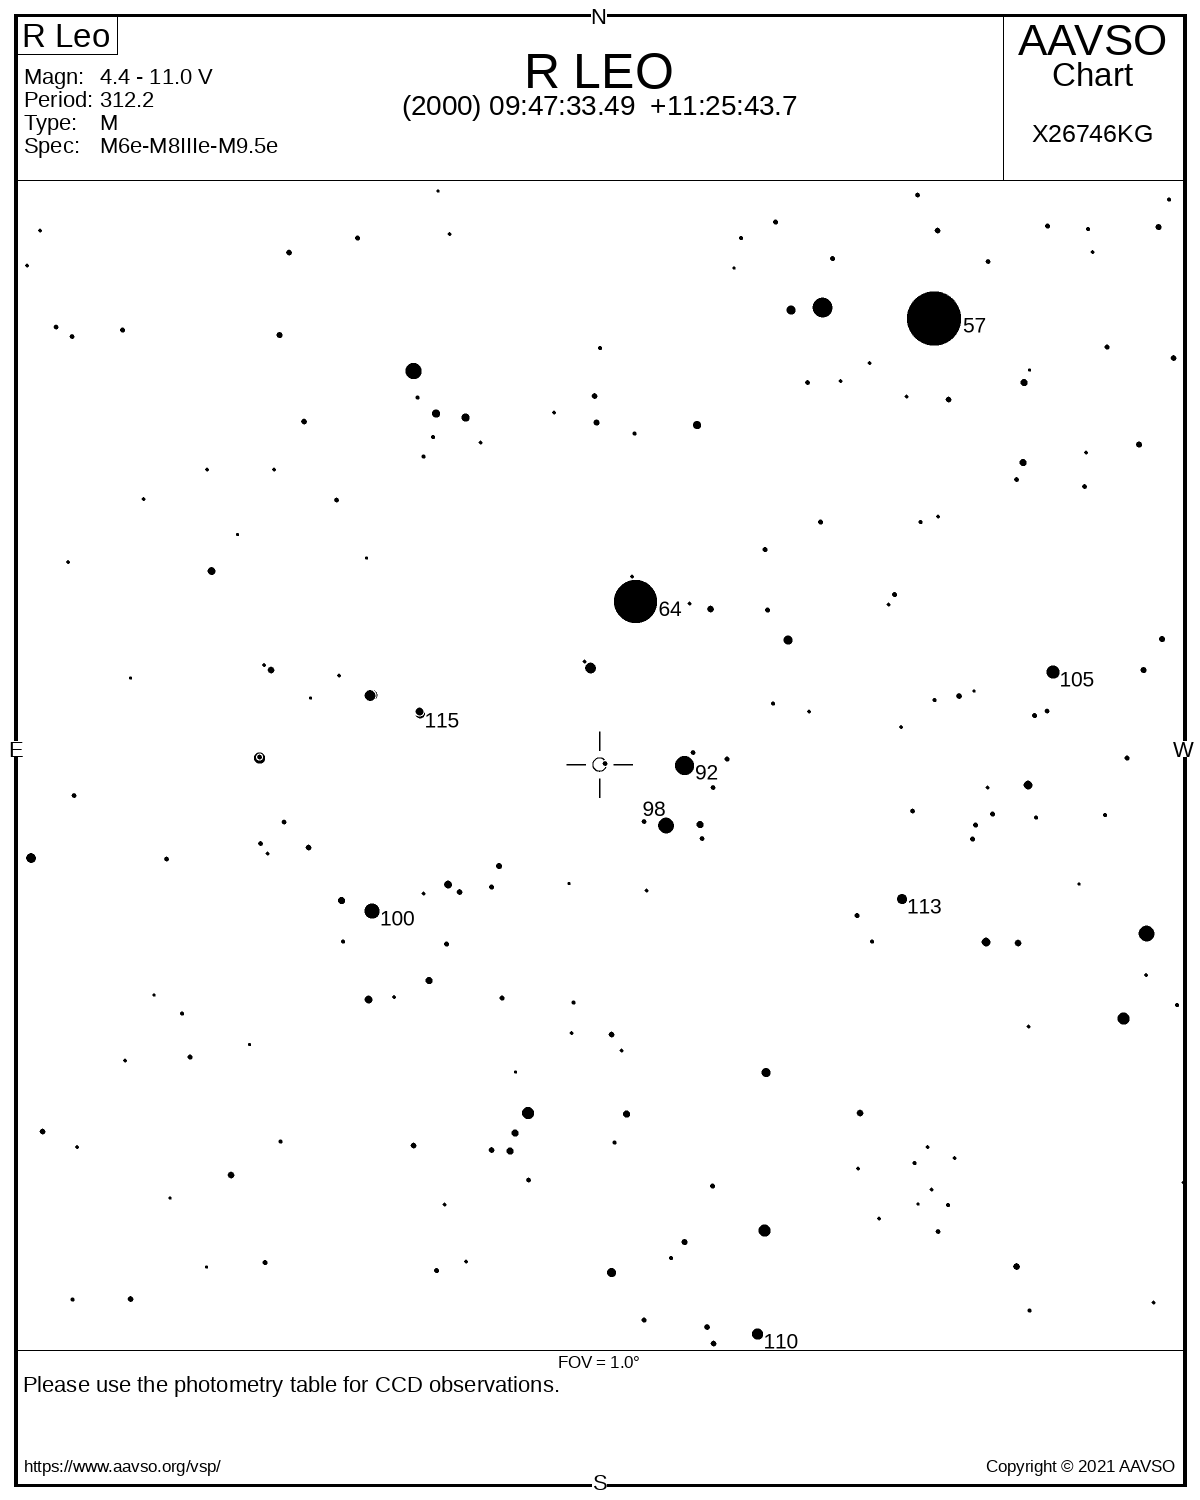 Eine Karte zeigt die Umgebung des veränderlichen Sterns R Leonis mit schwarzen Sternen auf weißem Hintergrund